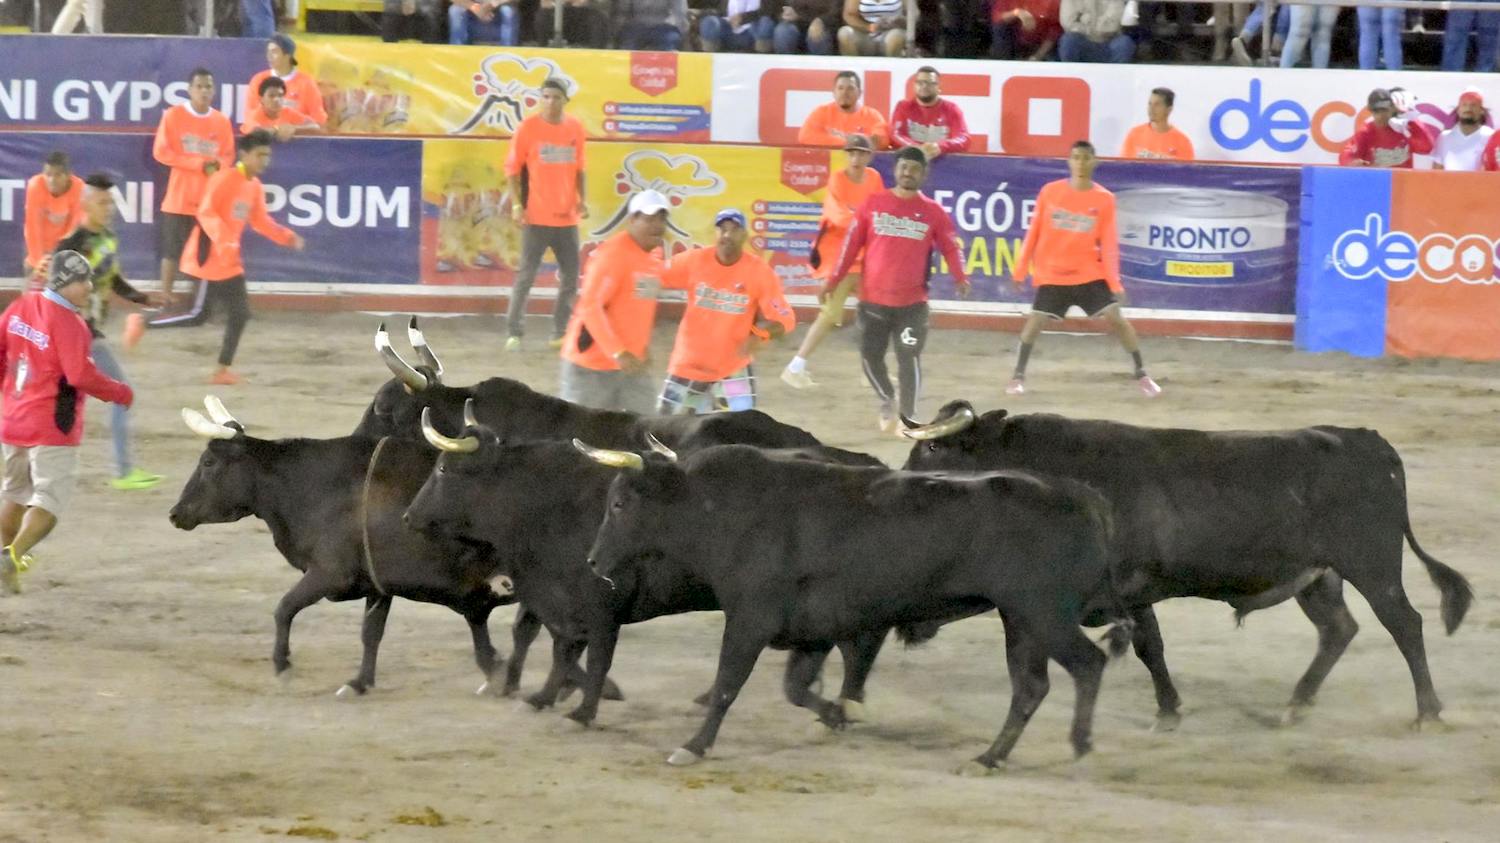 Por tercer año, Multimedios entrará al redondel a transmitir corridas de toro